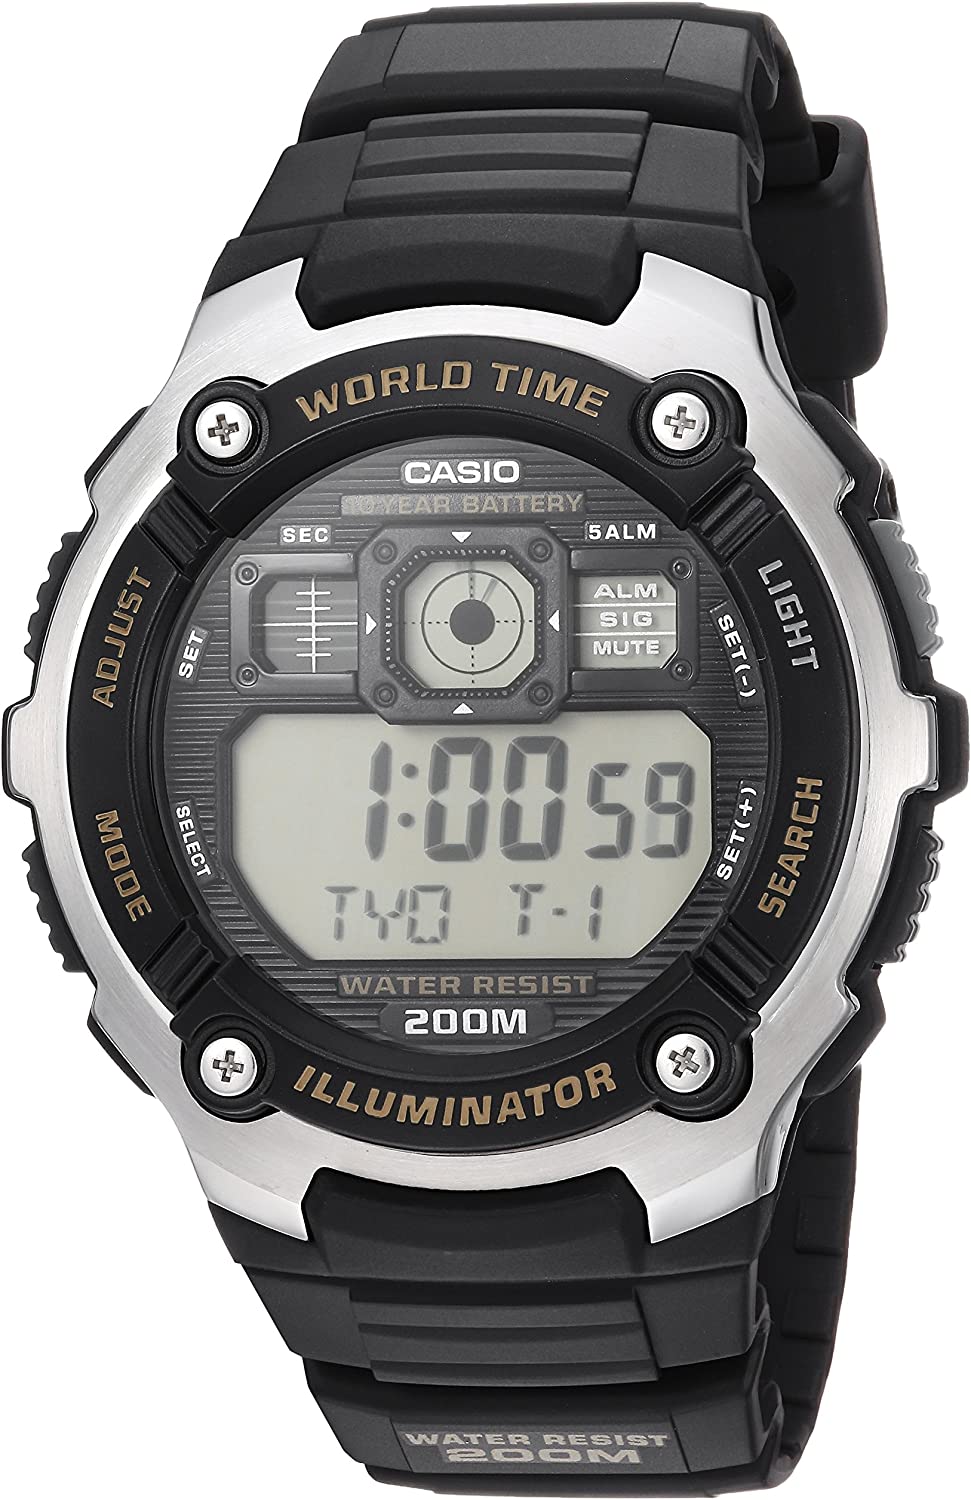 Khám phá đồng hồ Casio AE-2000W-9AVDF